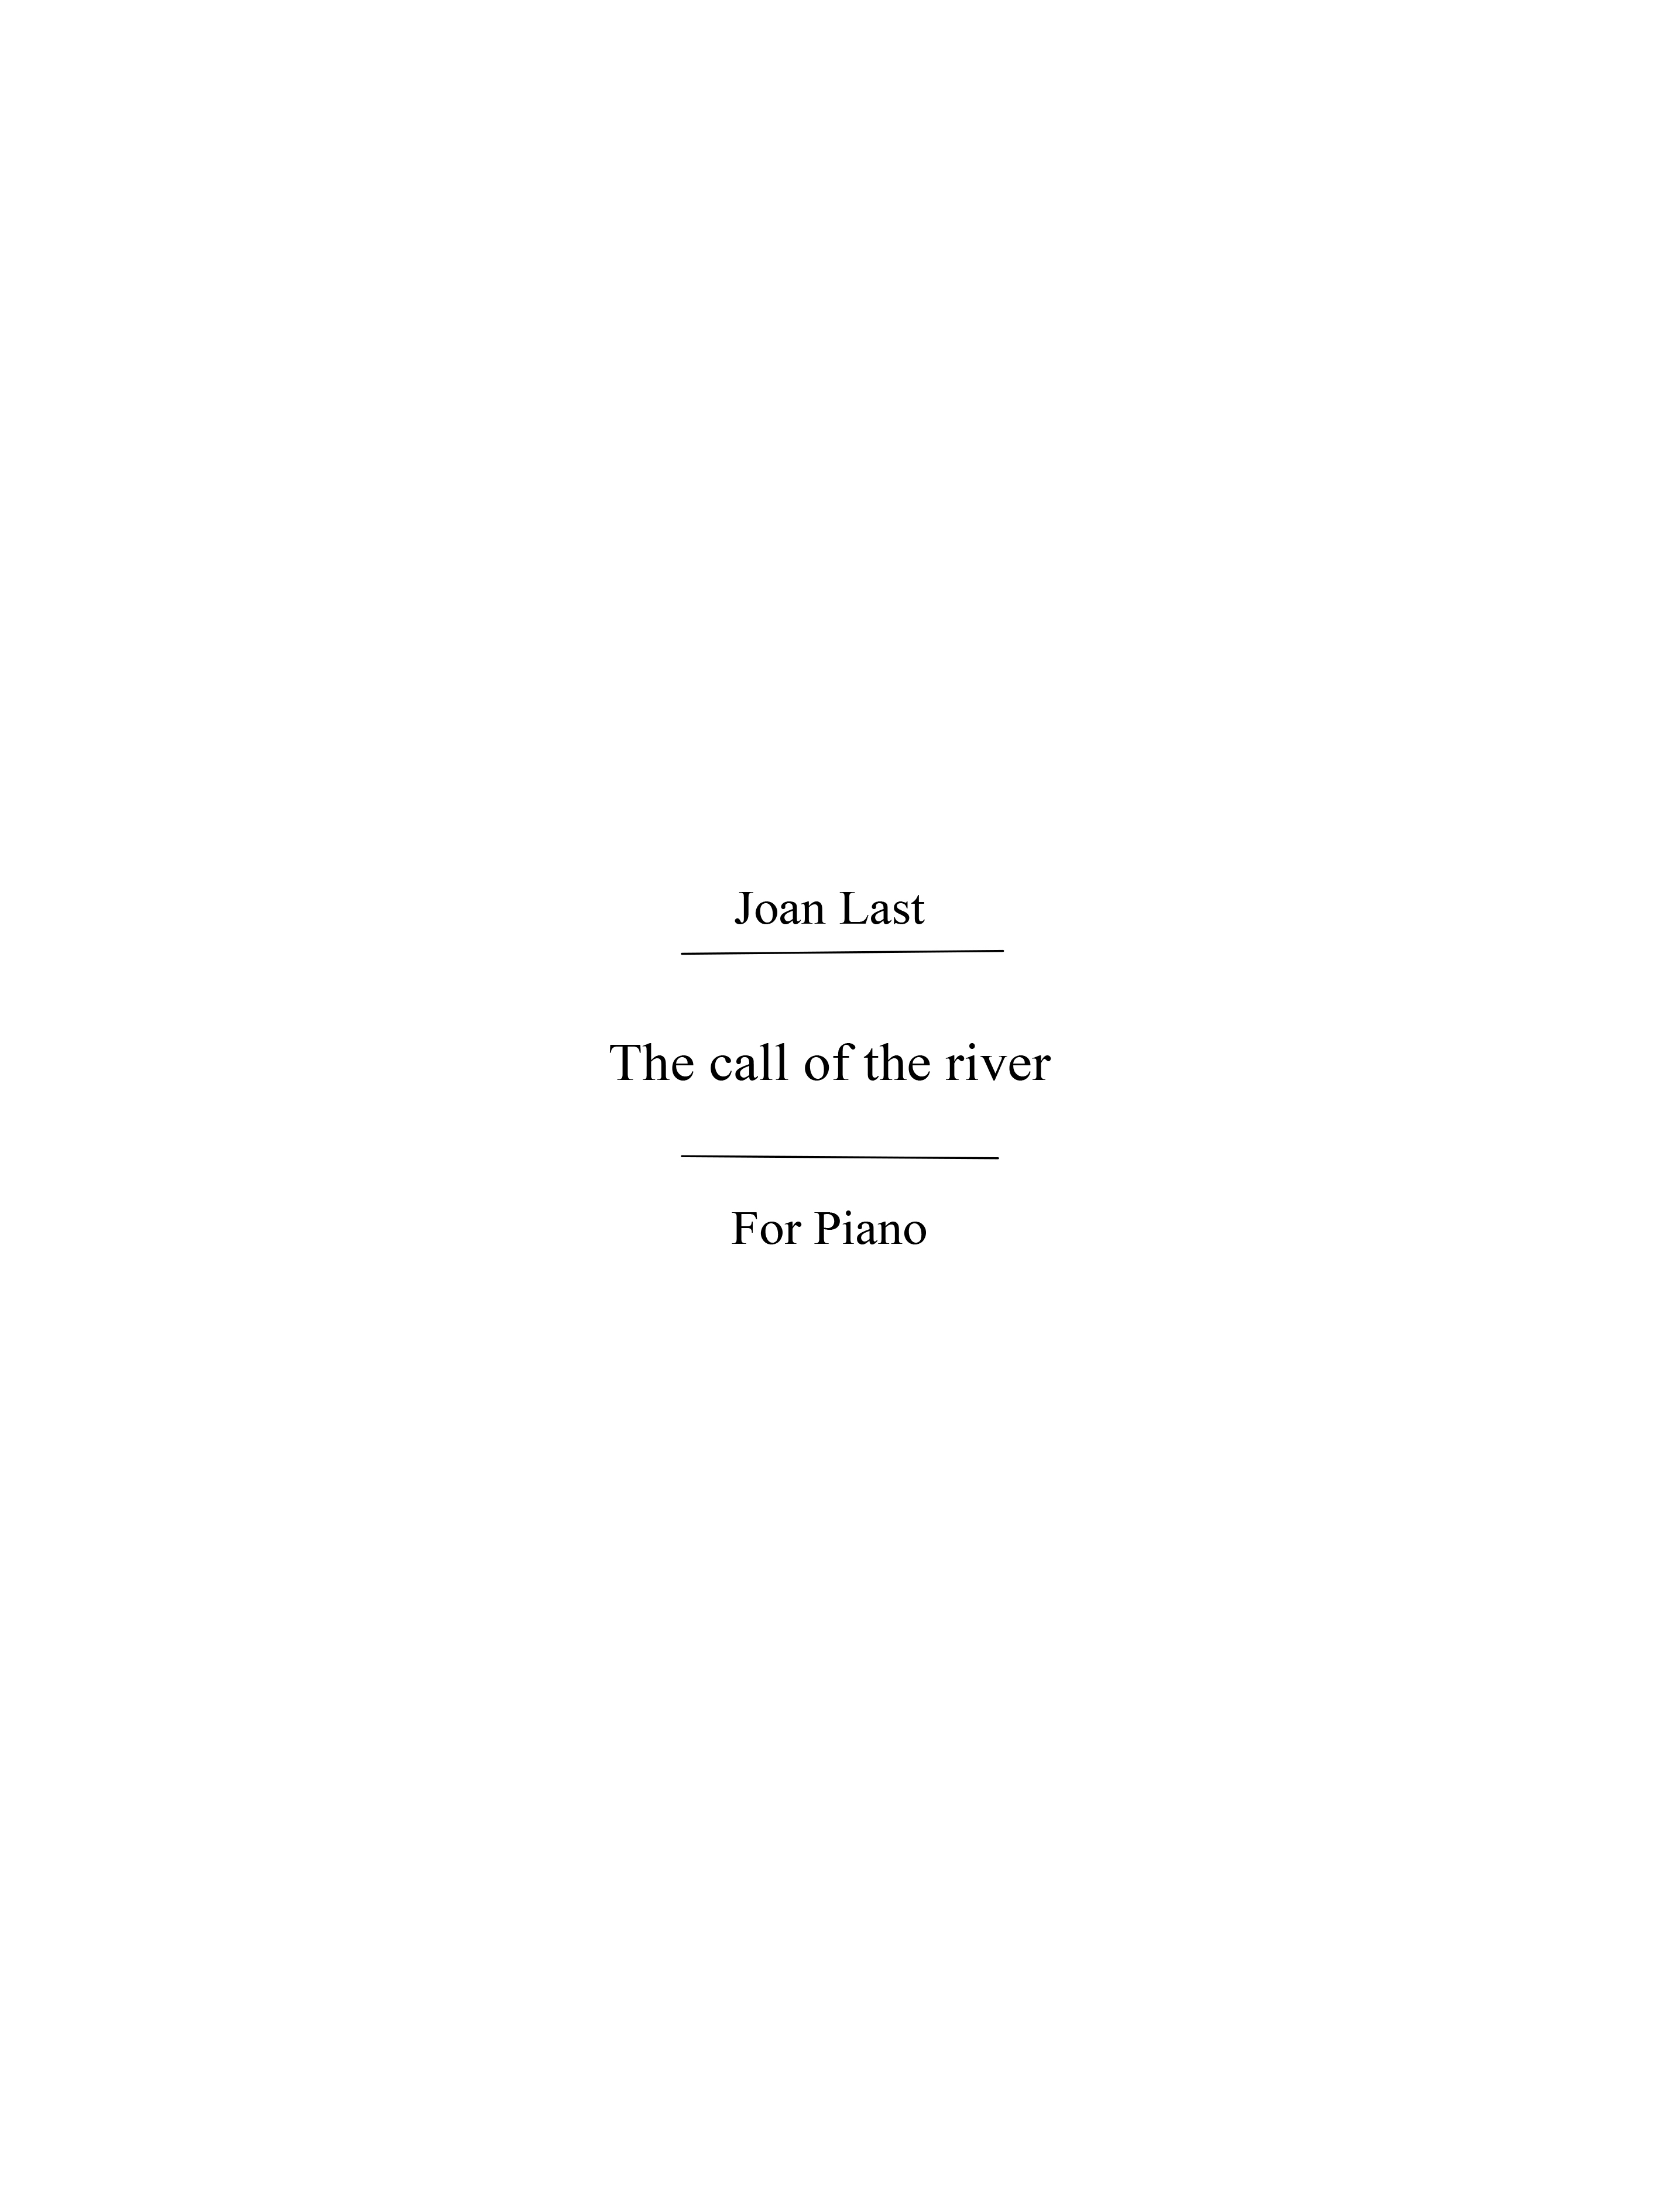 Last, J Call Of The River Pre-grade 1 Pf